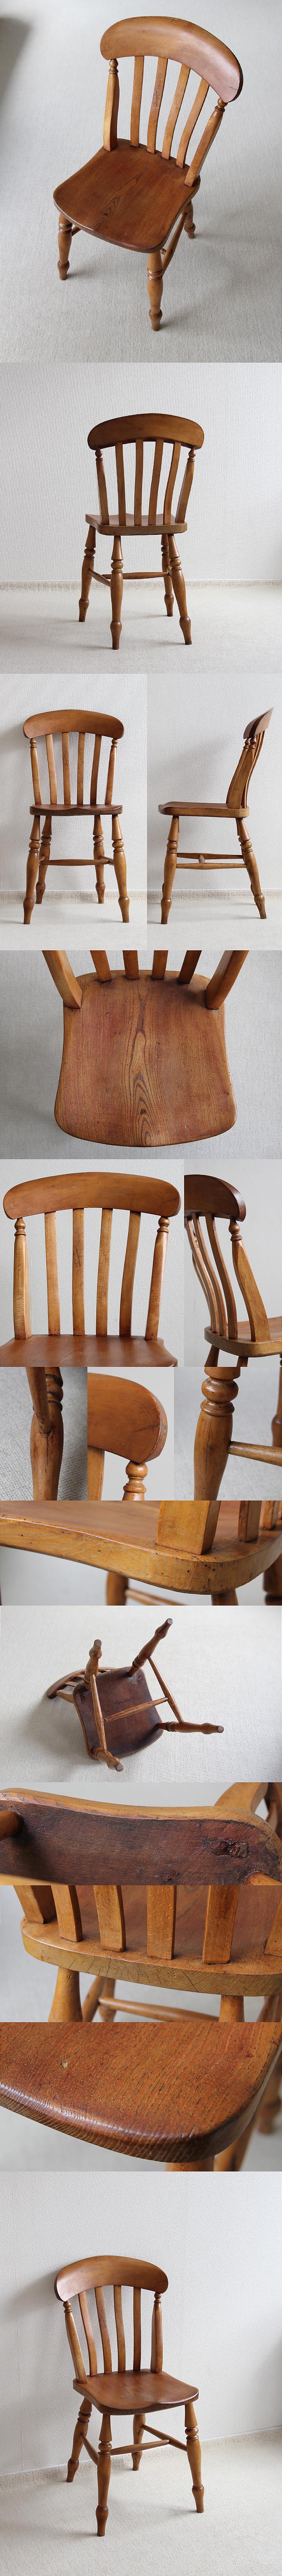 イギリス アンティーク キッチンチェア 木製椅子 無垢材 古木 家具 「ラスバックチェア」V-735